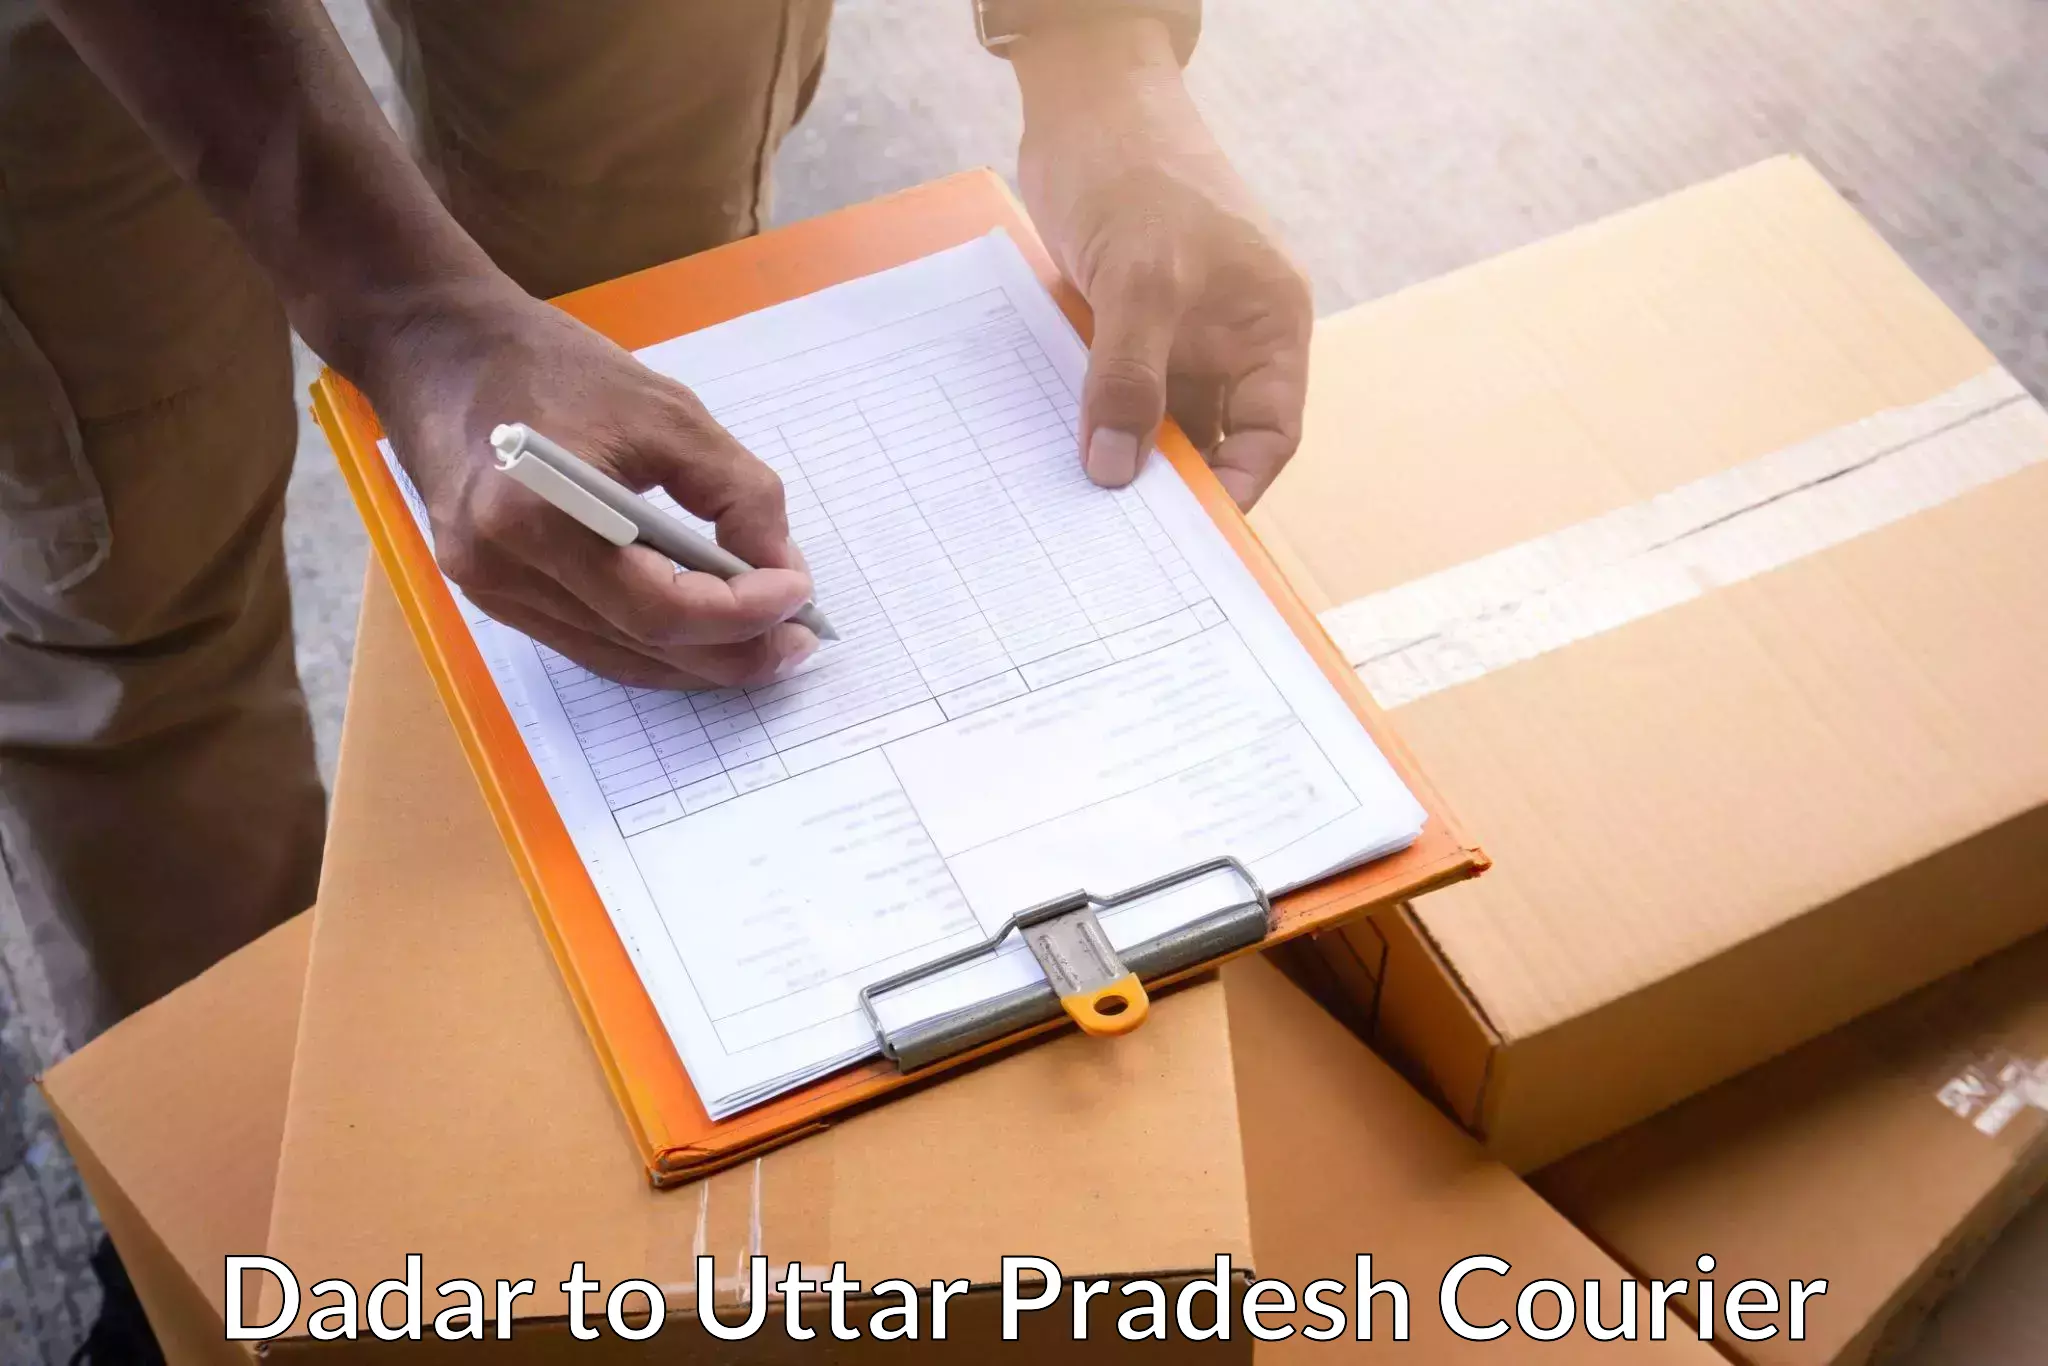 Efficient shipping platforms Dadar to Uttar Pradesh